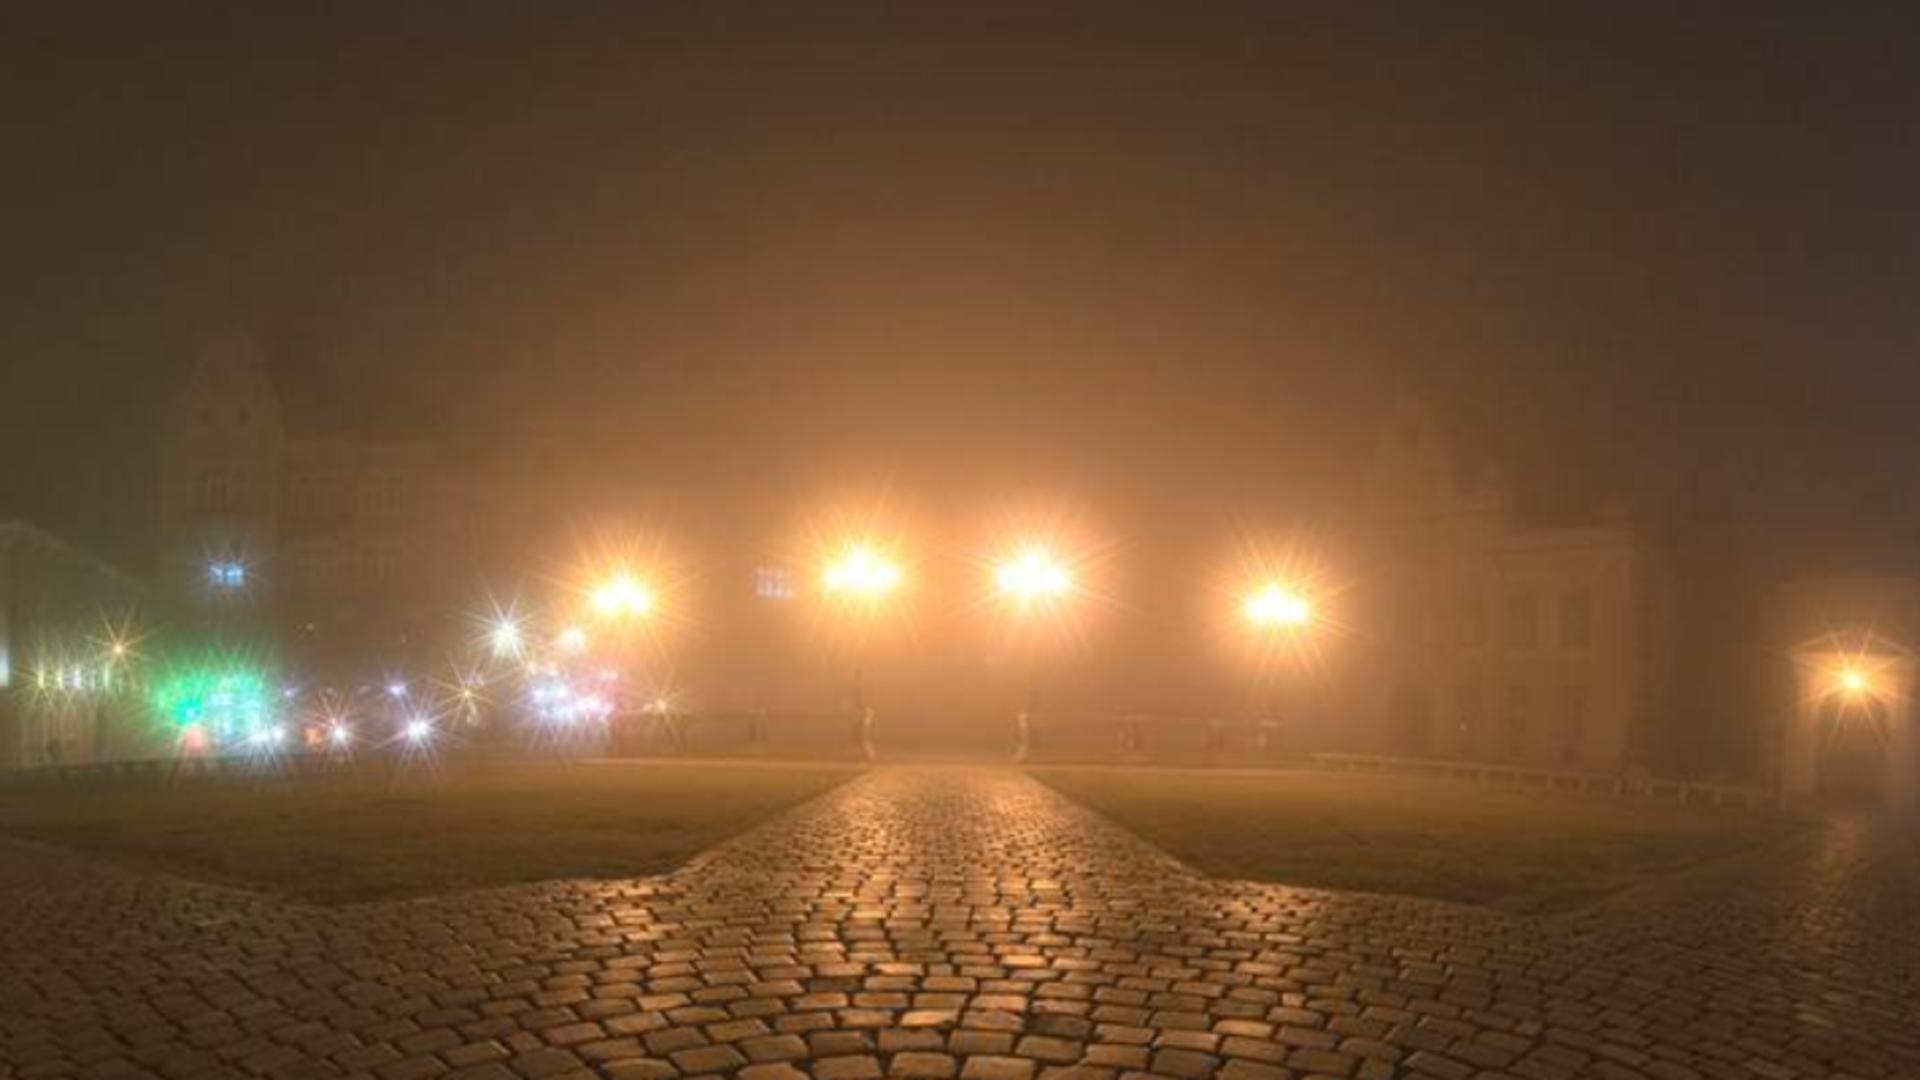 Alertă meteo în vestul României: Cod galben de ceață - Vizibilitate sub 50 de metri în Timișoara